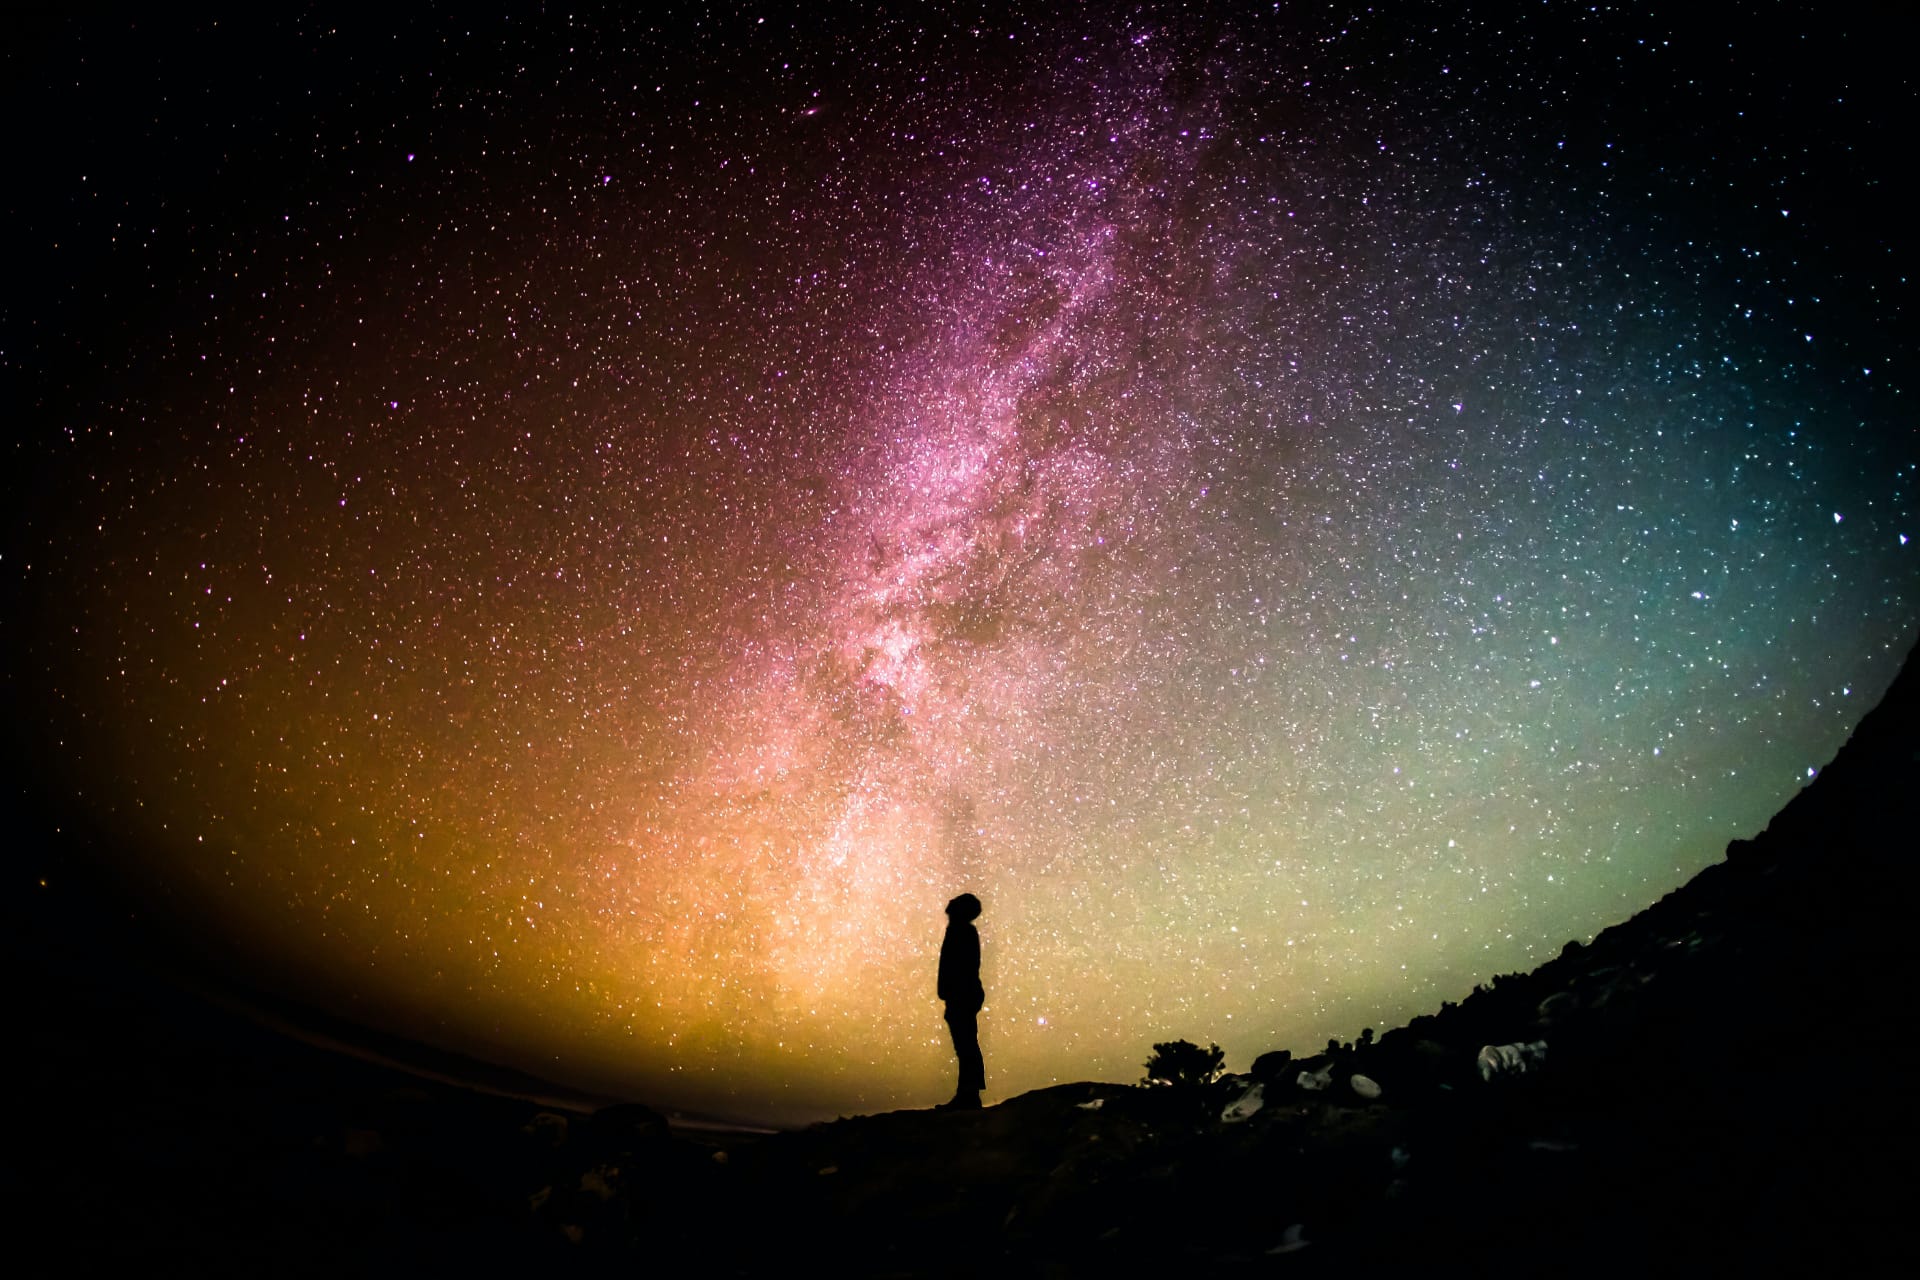 Ein Mann blick auf einen sternereichen Nachthimmel im Gebirge. Die Szene sieht magisch aus und schenkt Zuversicht für die Zukunft.